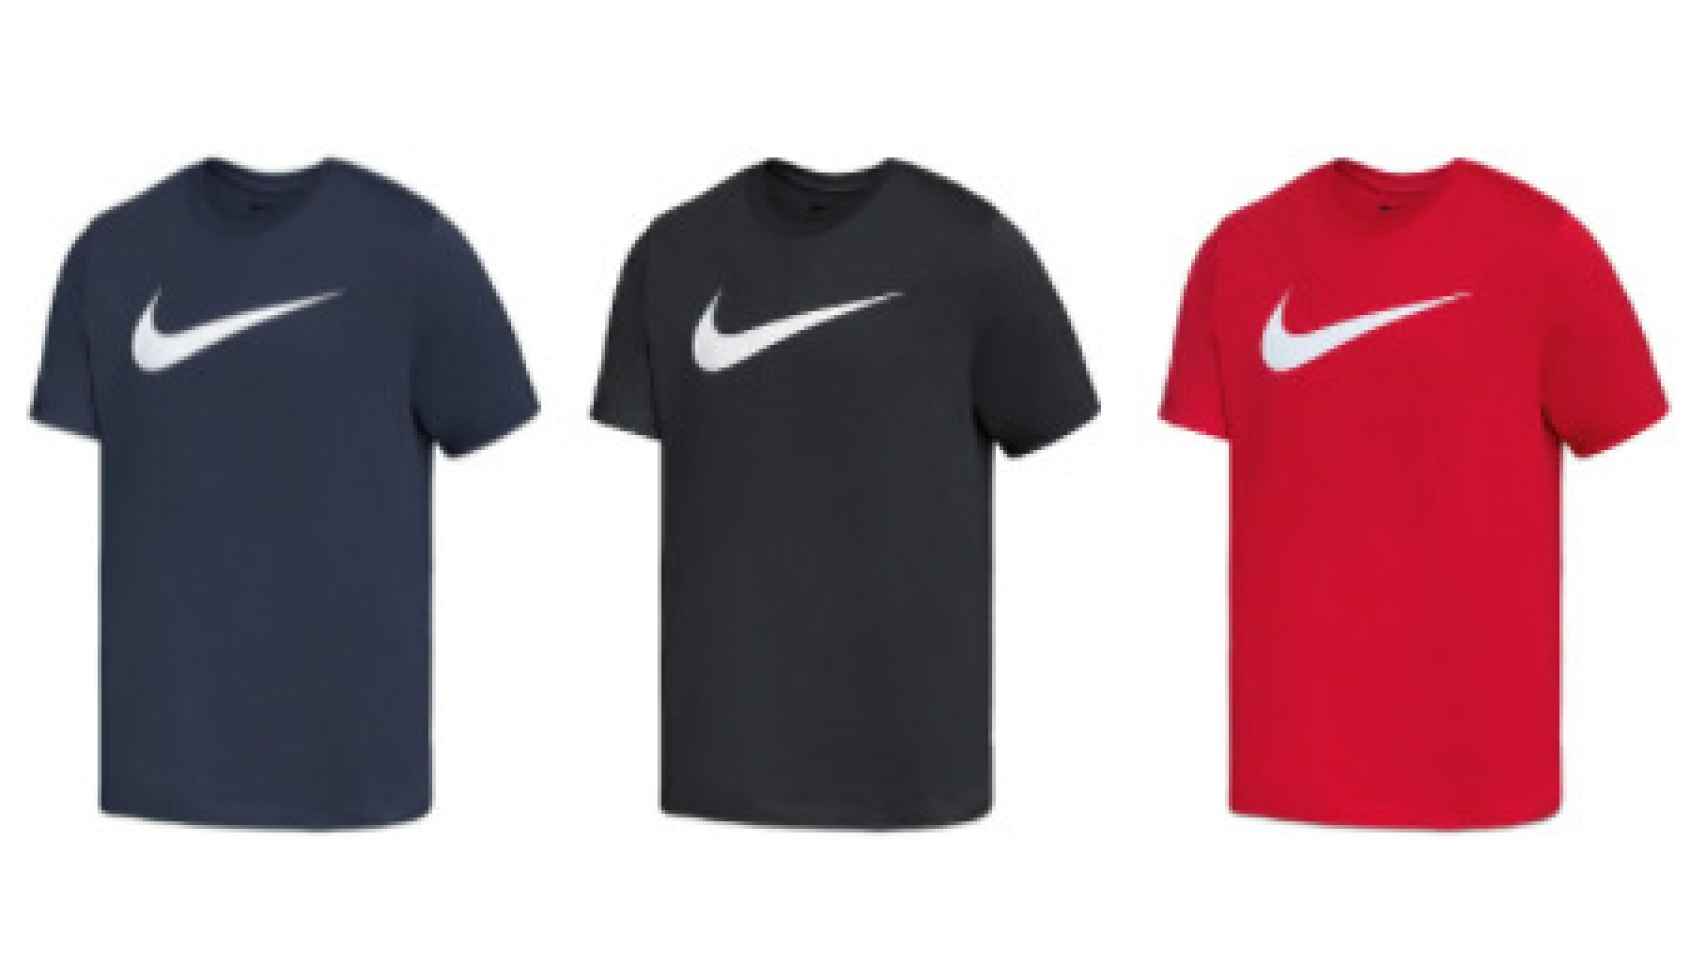 Las camisetas de Nike vendidas en Lidl.